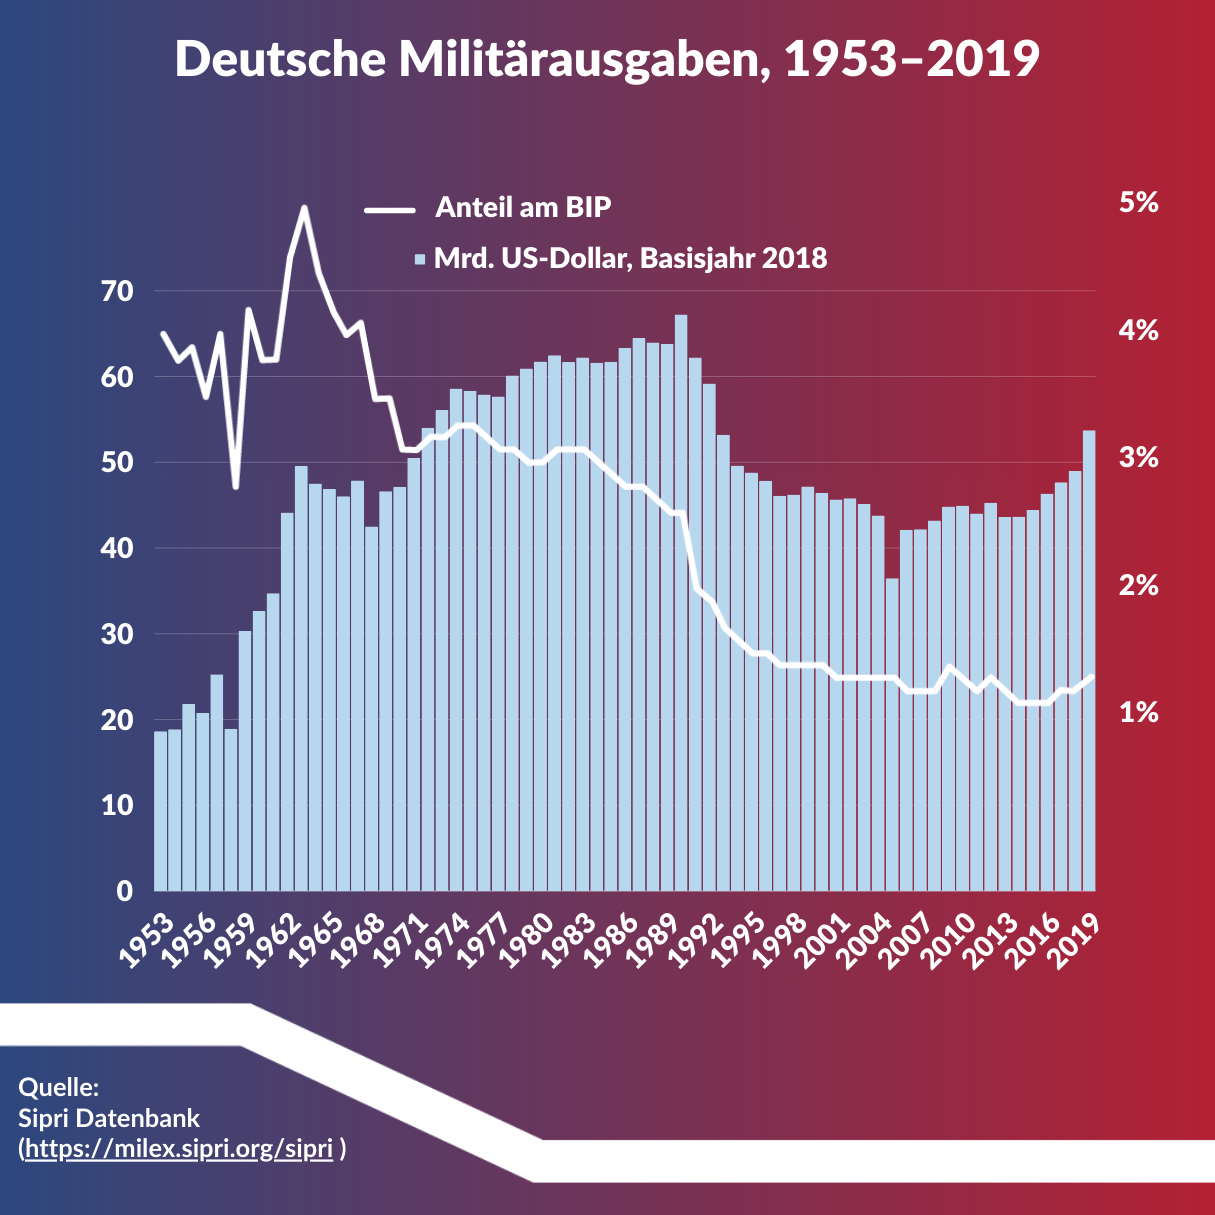 Infografik zur Entwicklung der Verteidigungsausgaben in Deutschland von 1953-2019